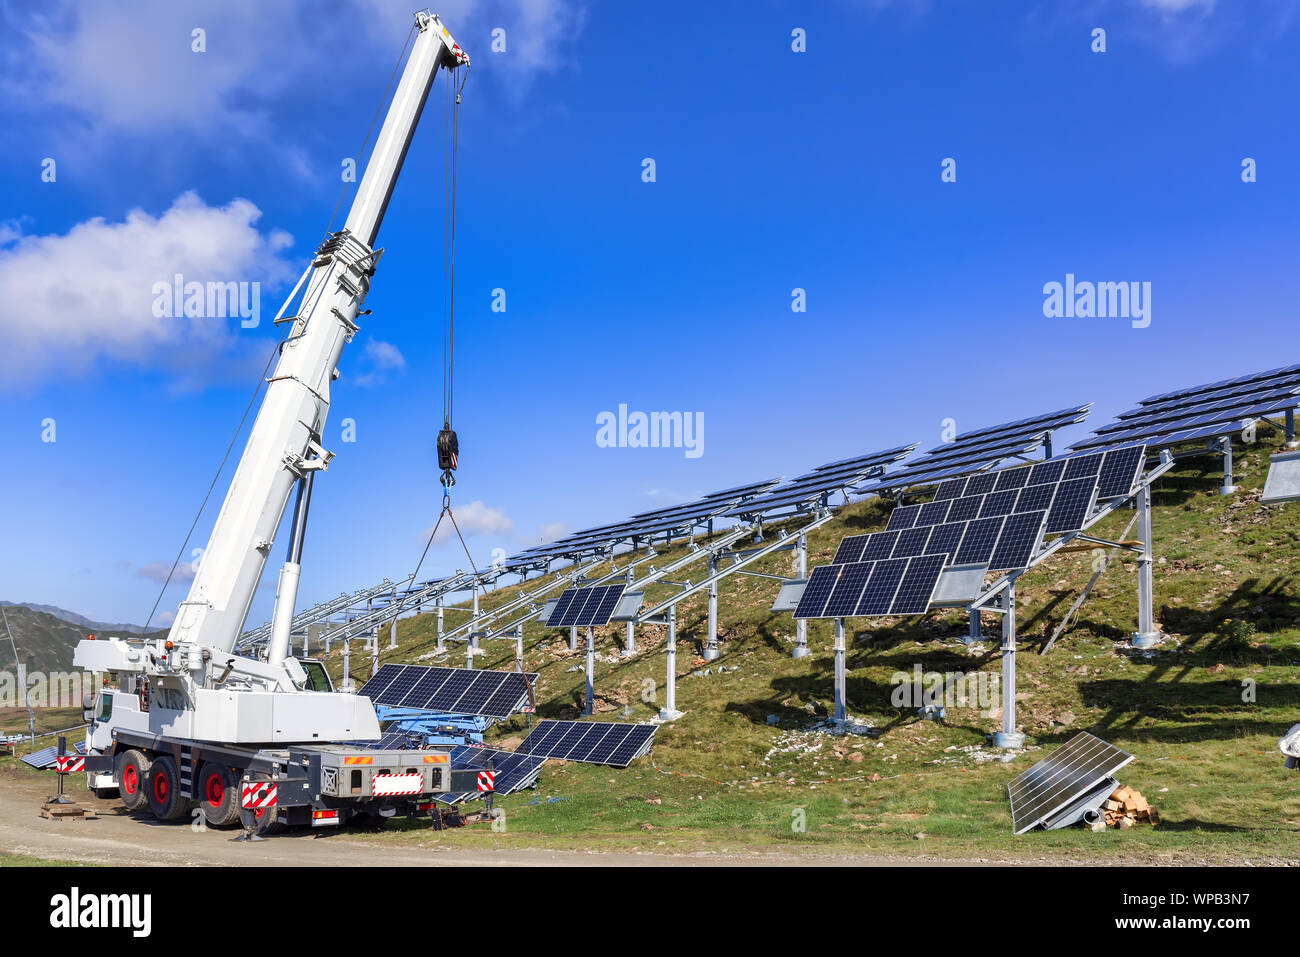 Travailleur professionnel l'installation de panneaux solaires sur le livre vert de la construction métallique. Solution innovante pour la résolution des problèmes de l'énergie. Utiliser des ressources renouvelables. En vert Banque D'Images